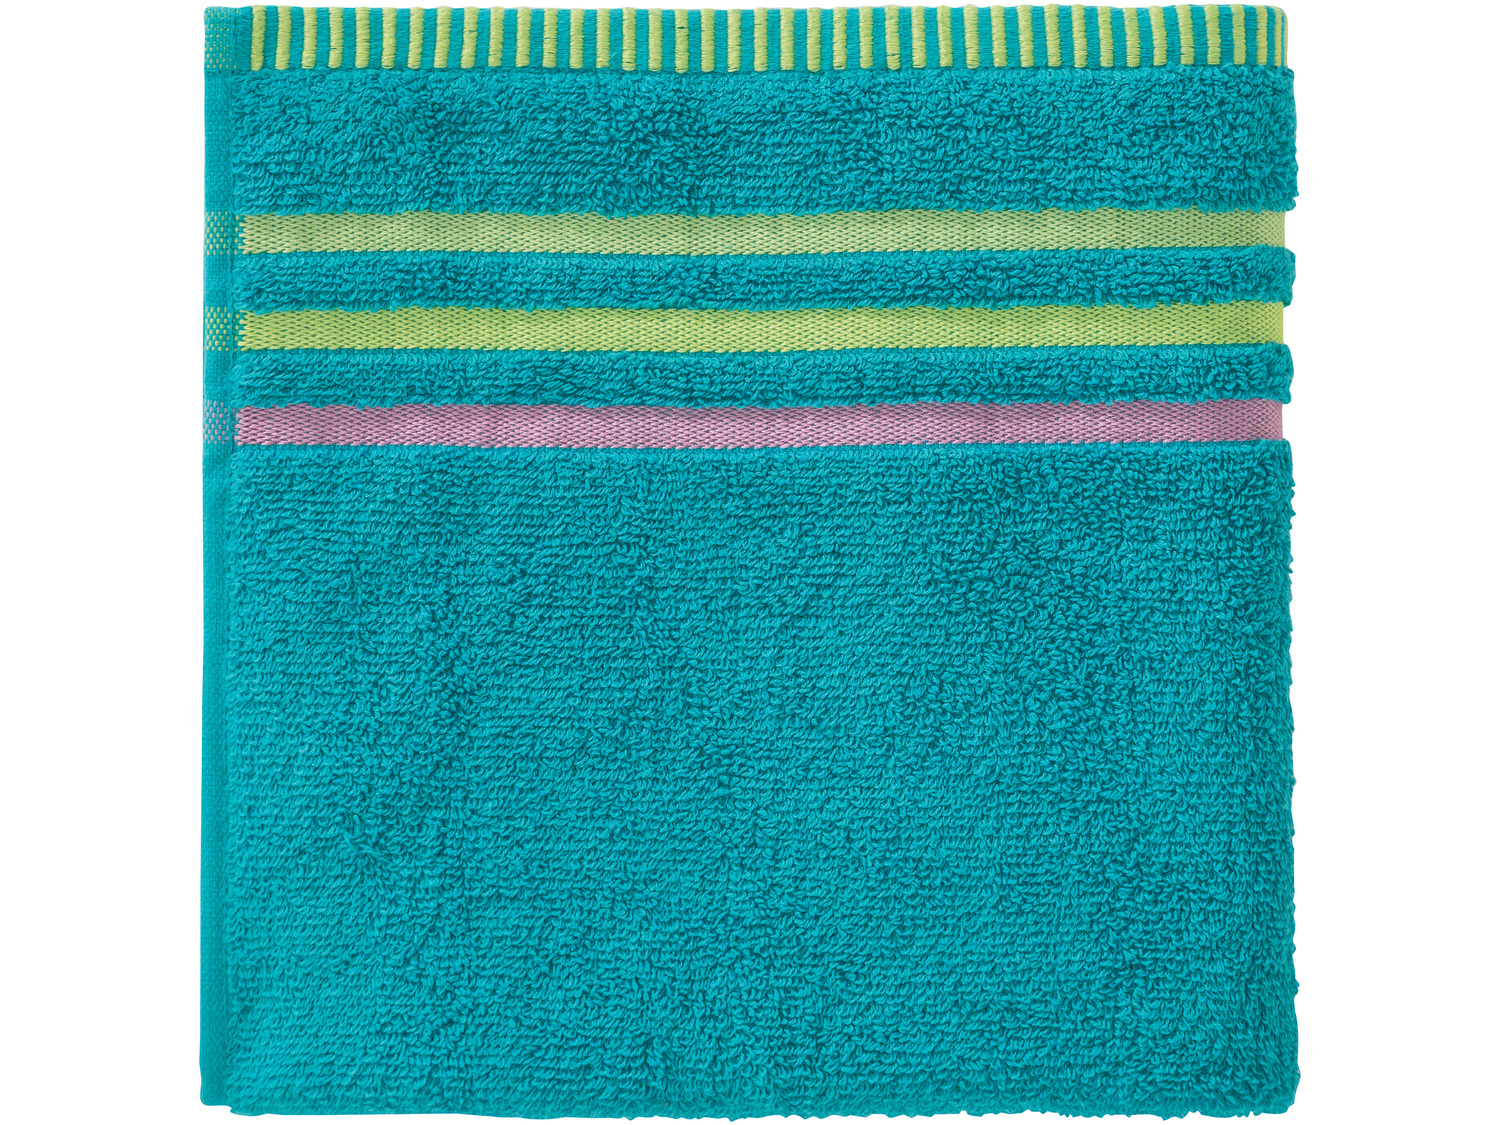 Ręcznik 70 x 140 cm Miomare, cena 19,99 PLN 
4 kolory 
- chłonne i wytrzymałe
- ...